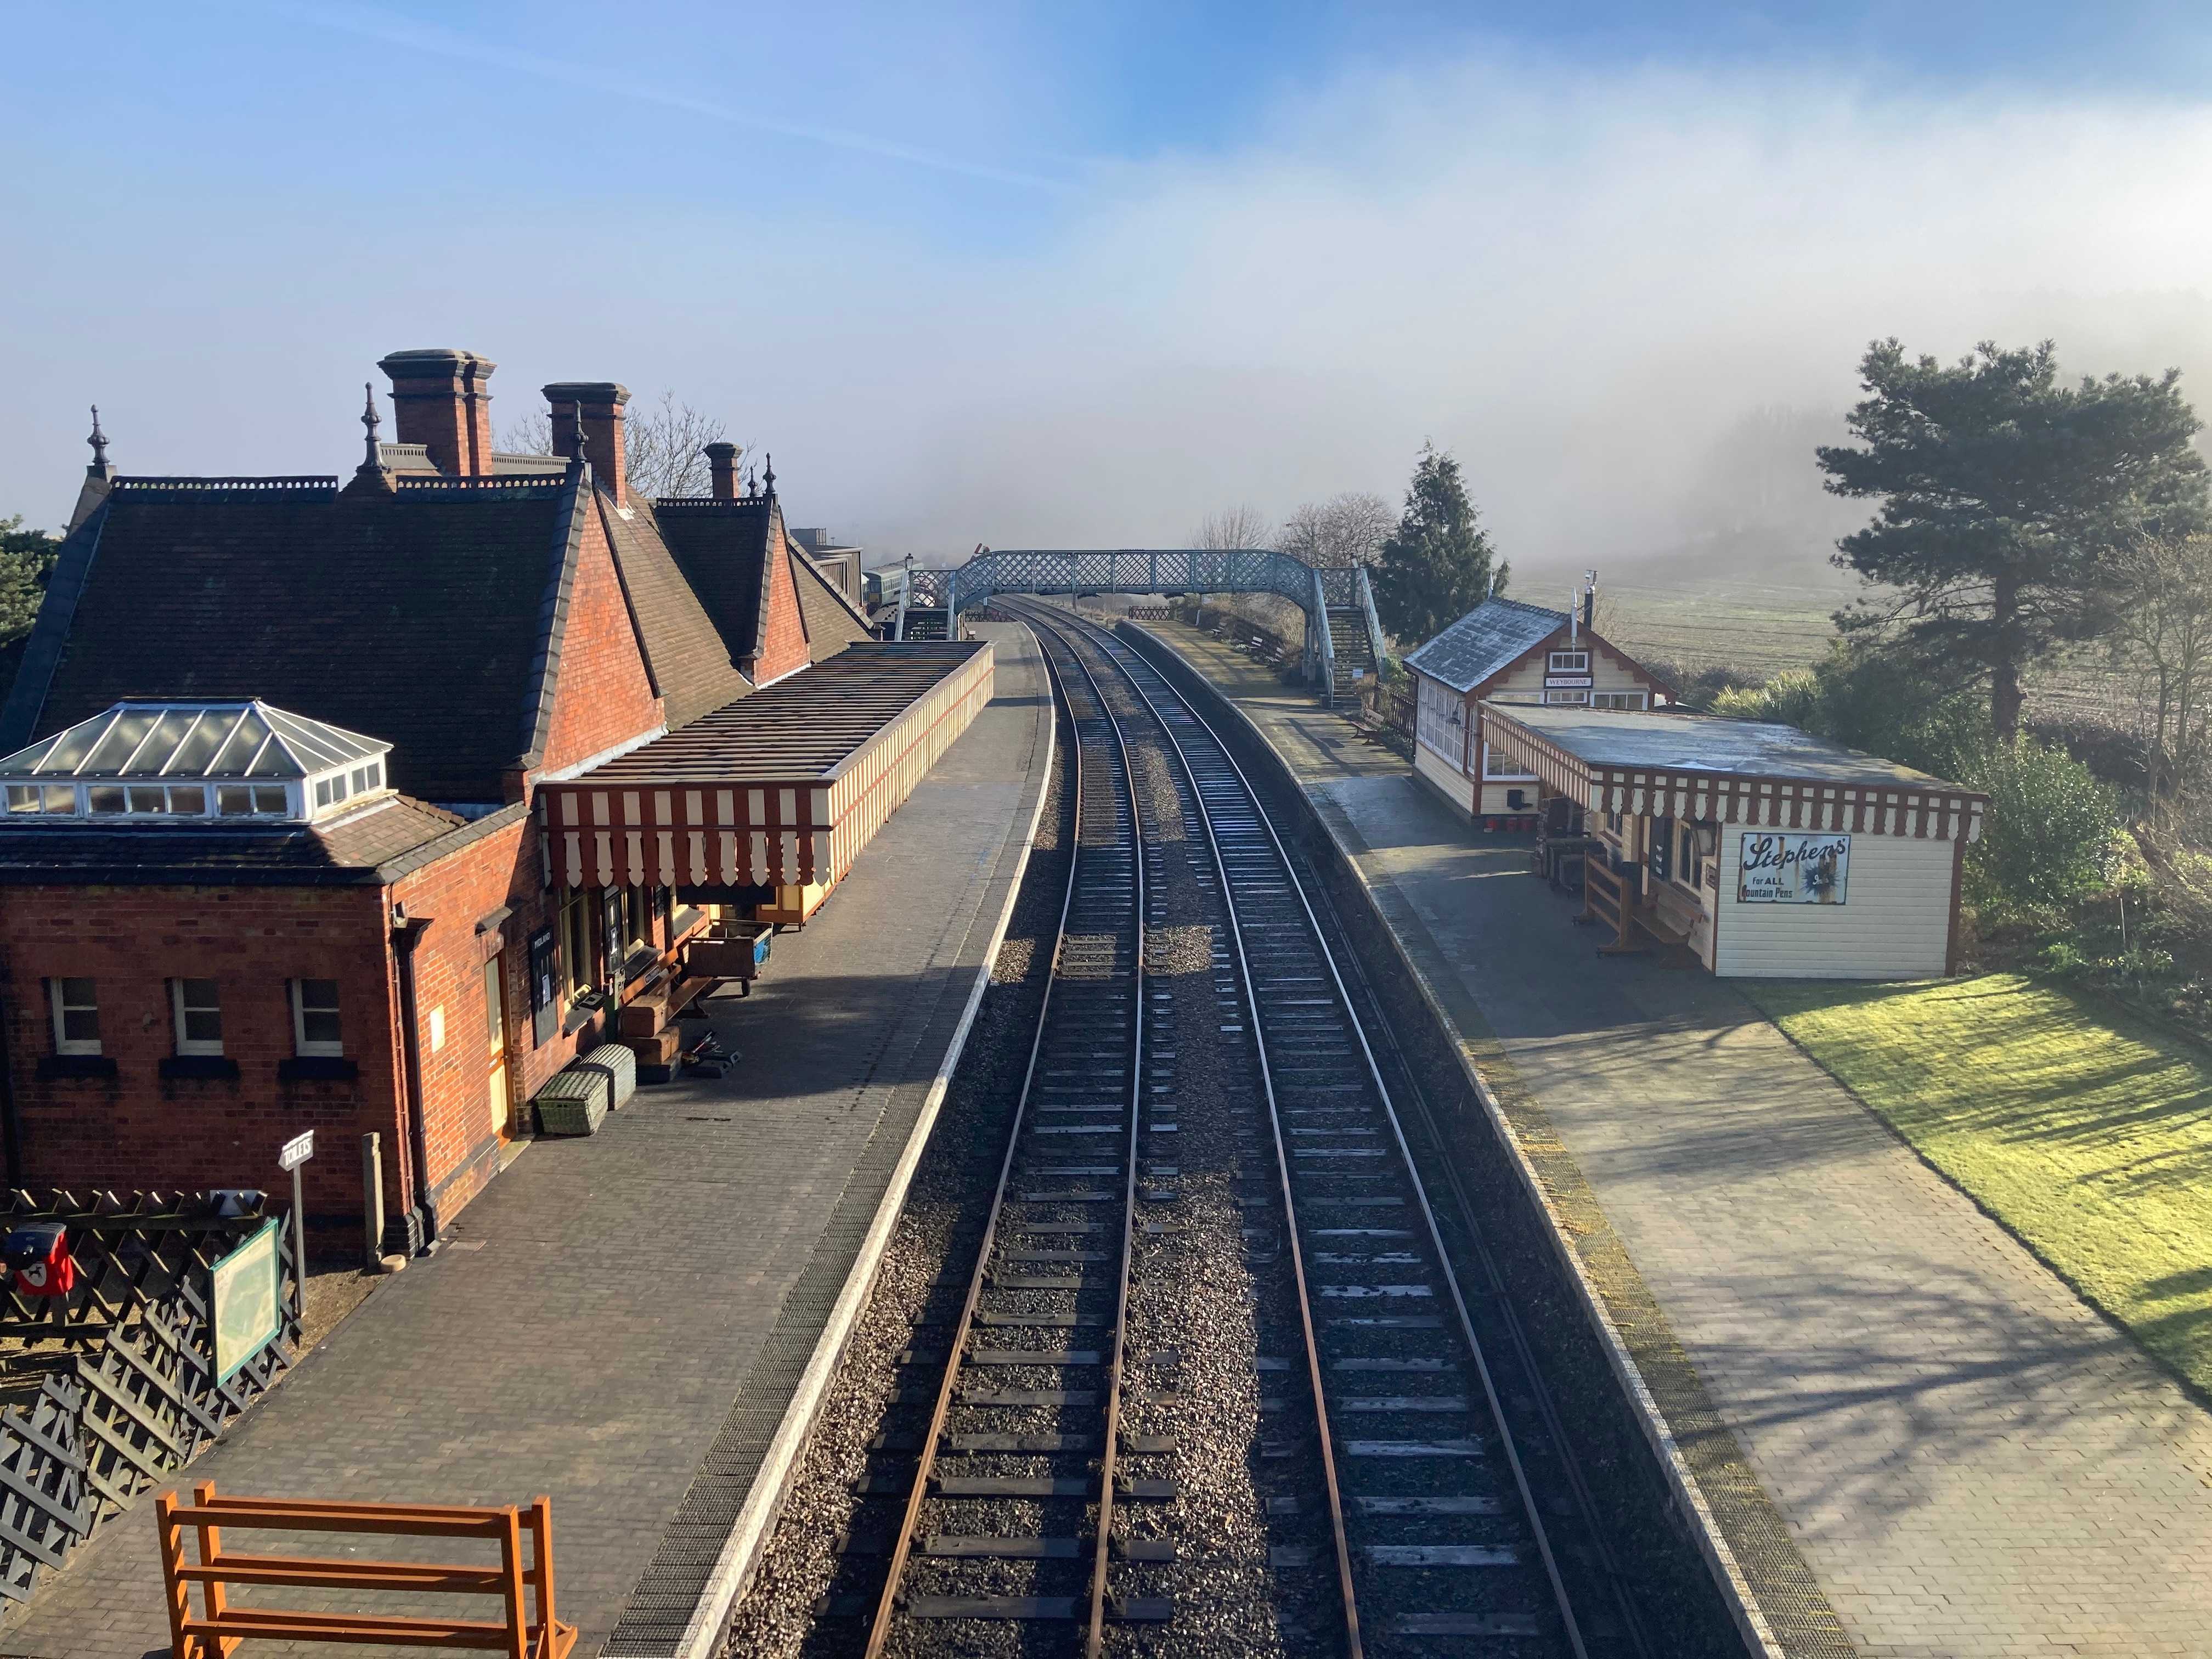 Weybourne Station